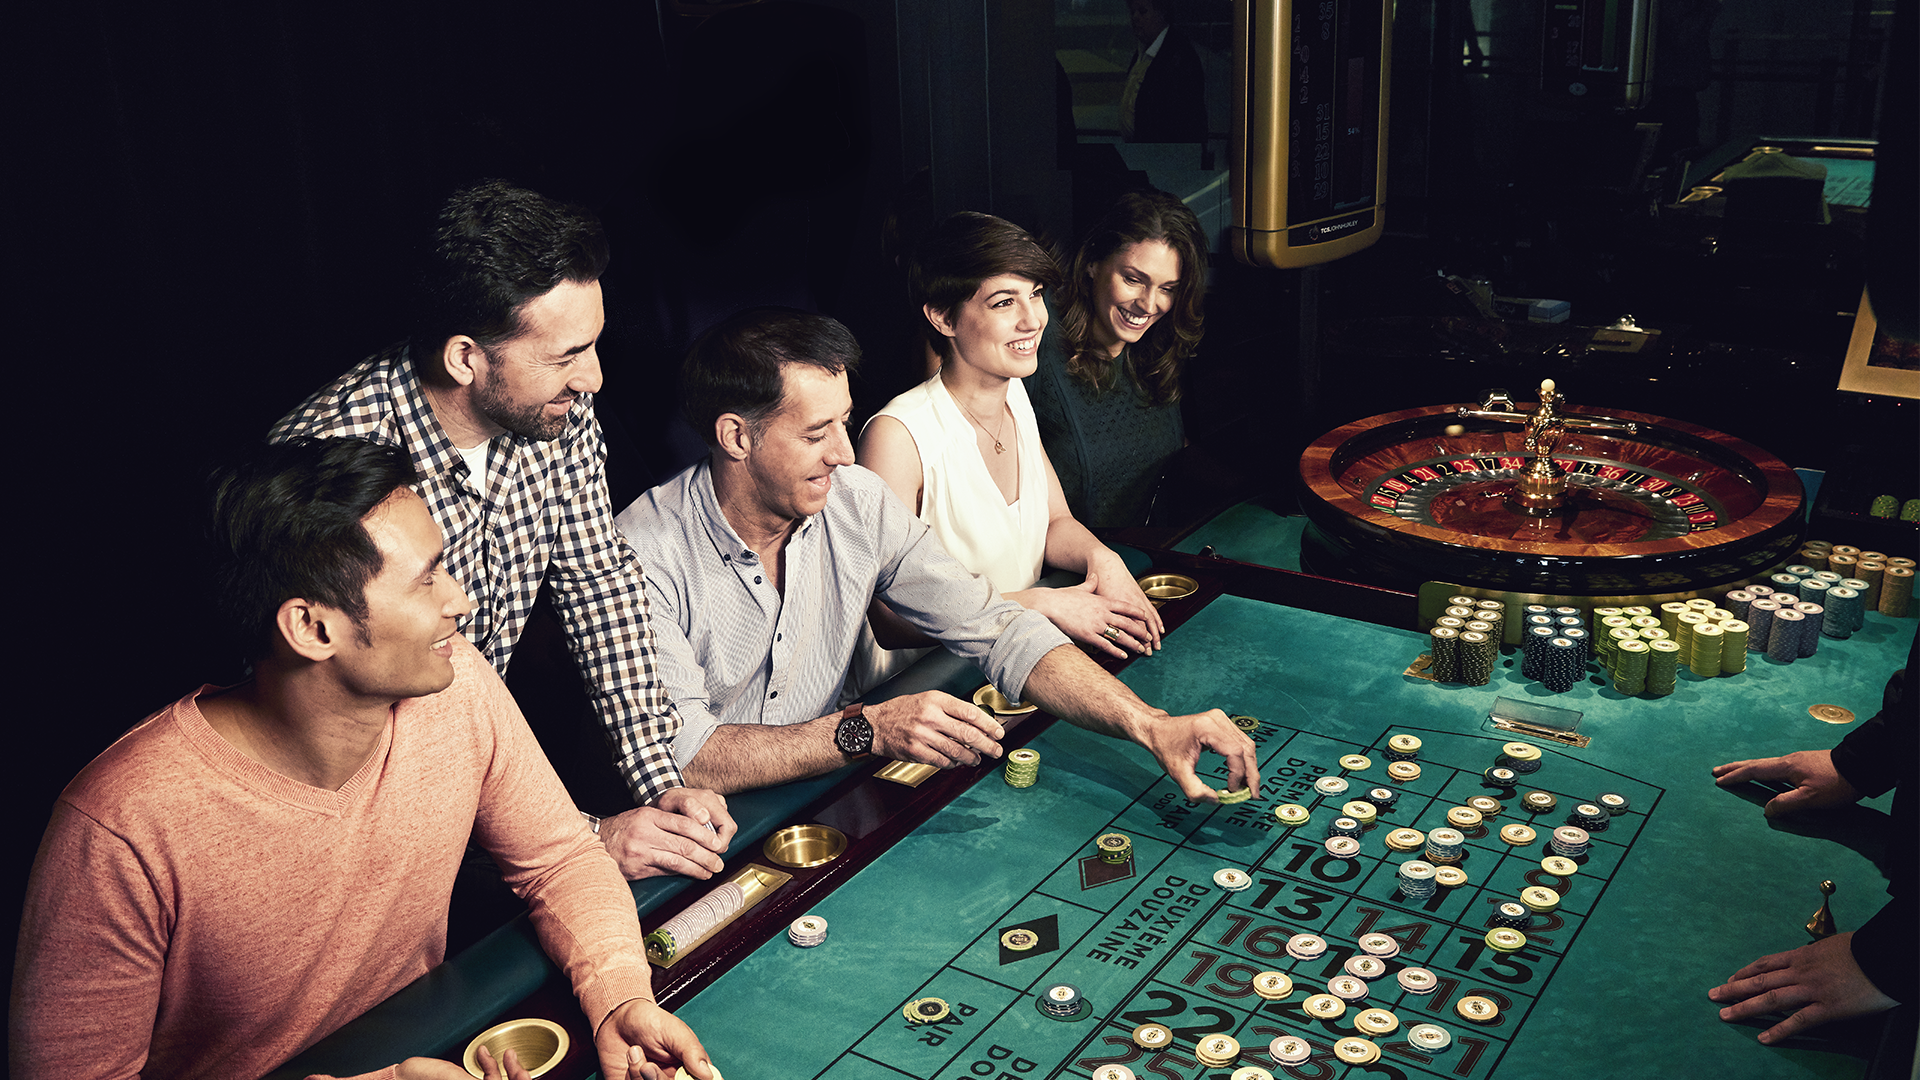 Poker o roulette? L’enigma del giocatore online